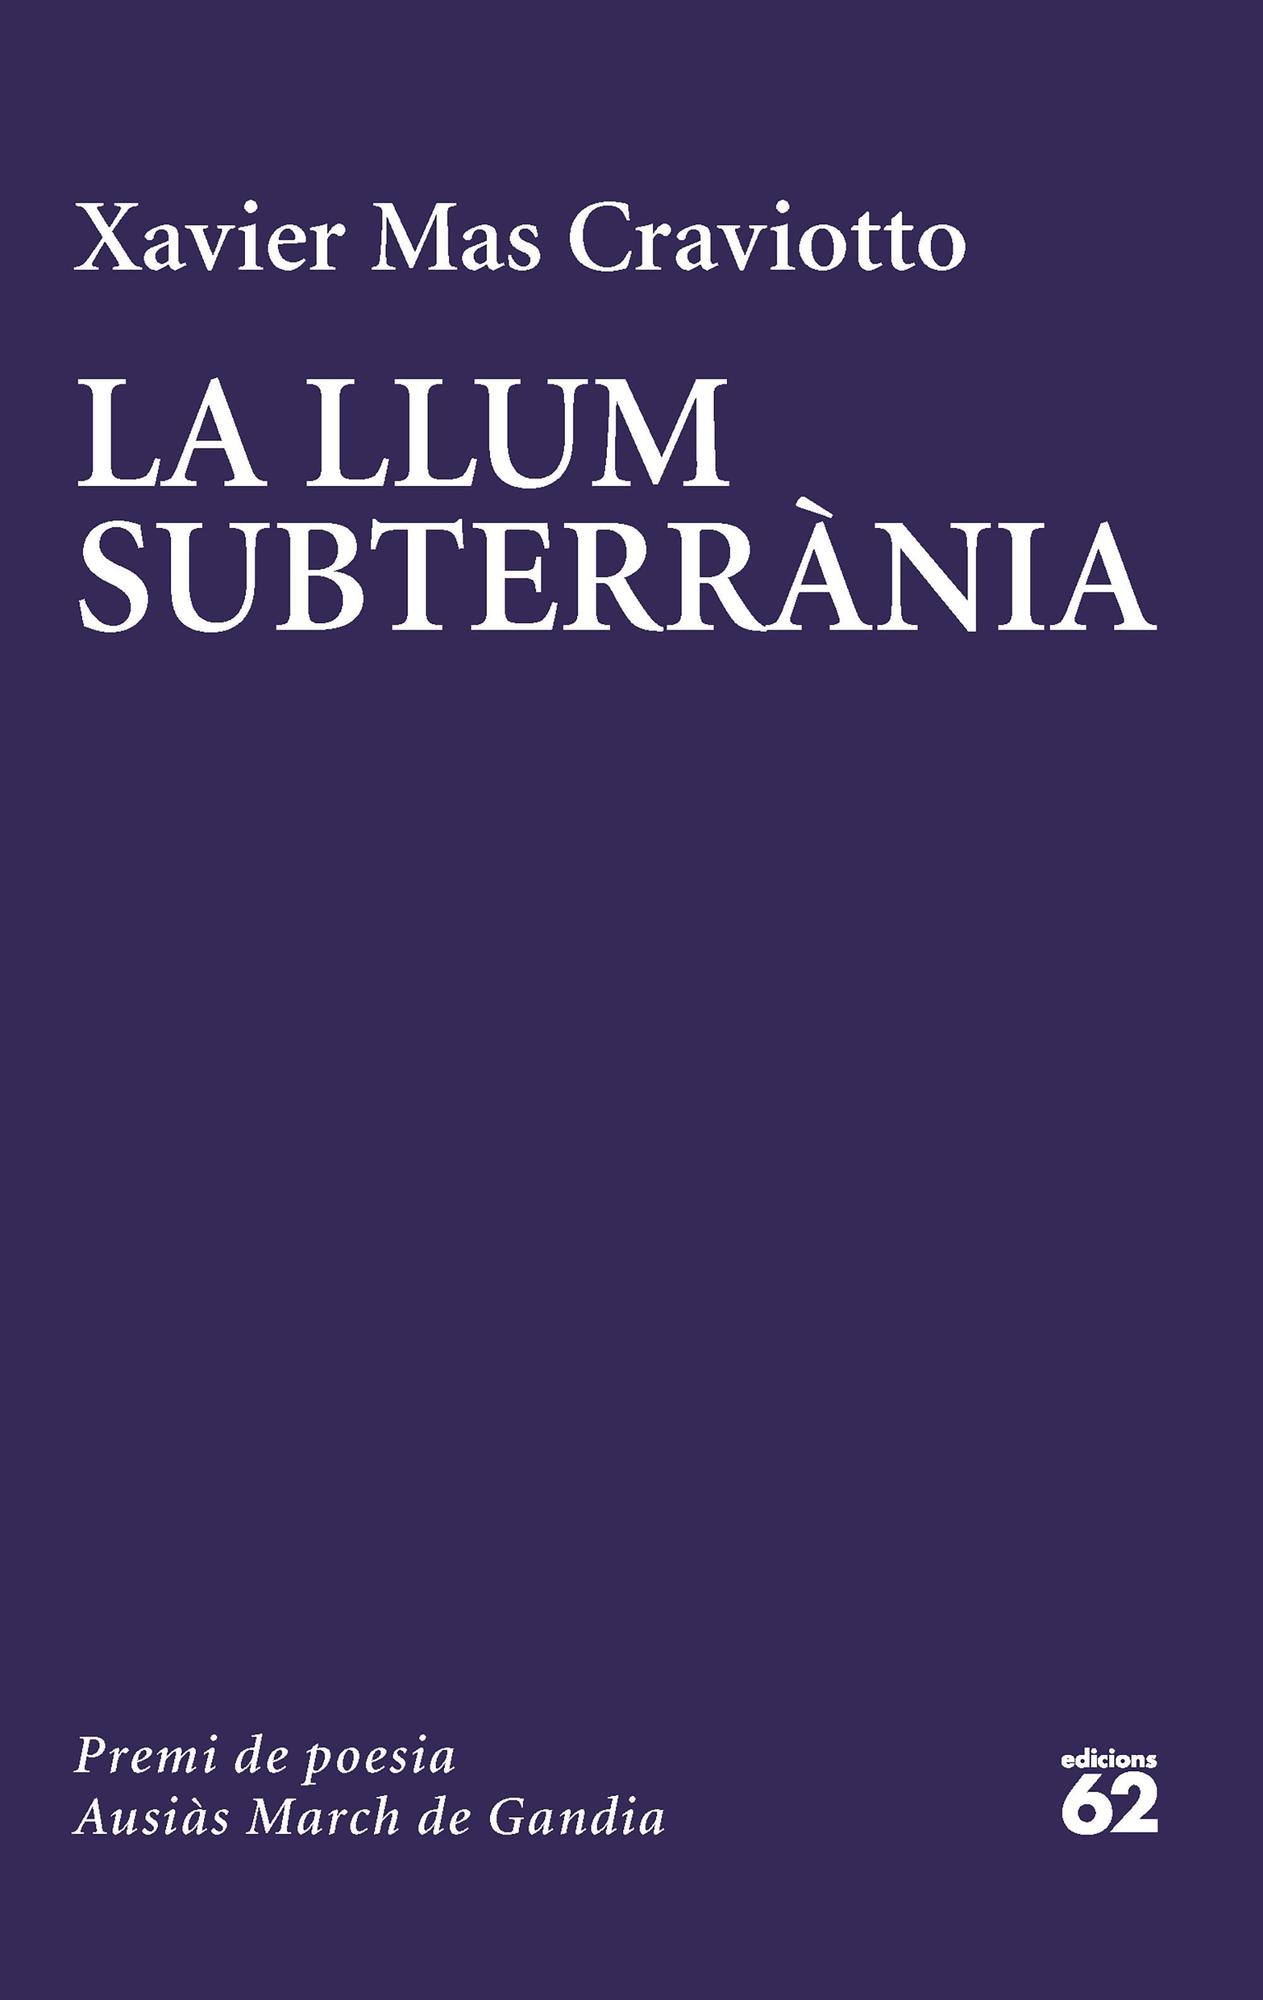 La llum subterrània / Edicions 62 /15,50 euros / 72 pàgines / Poesia